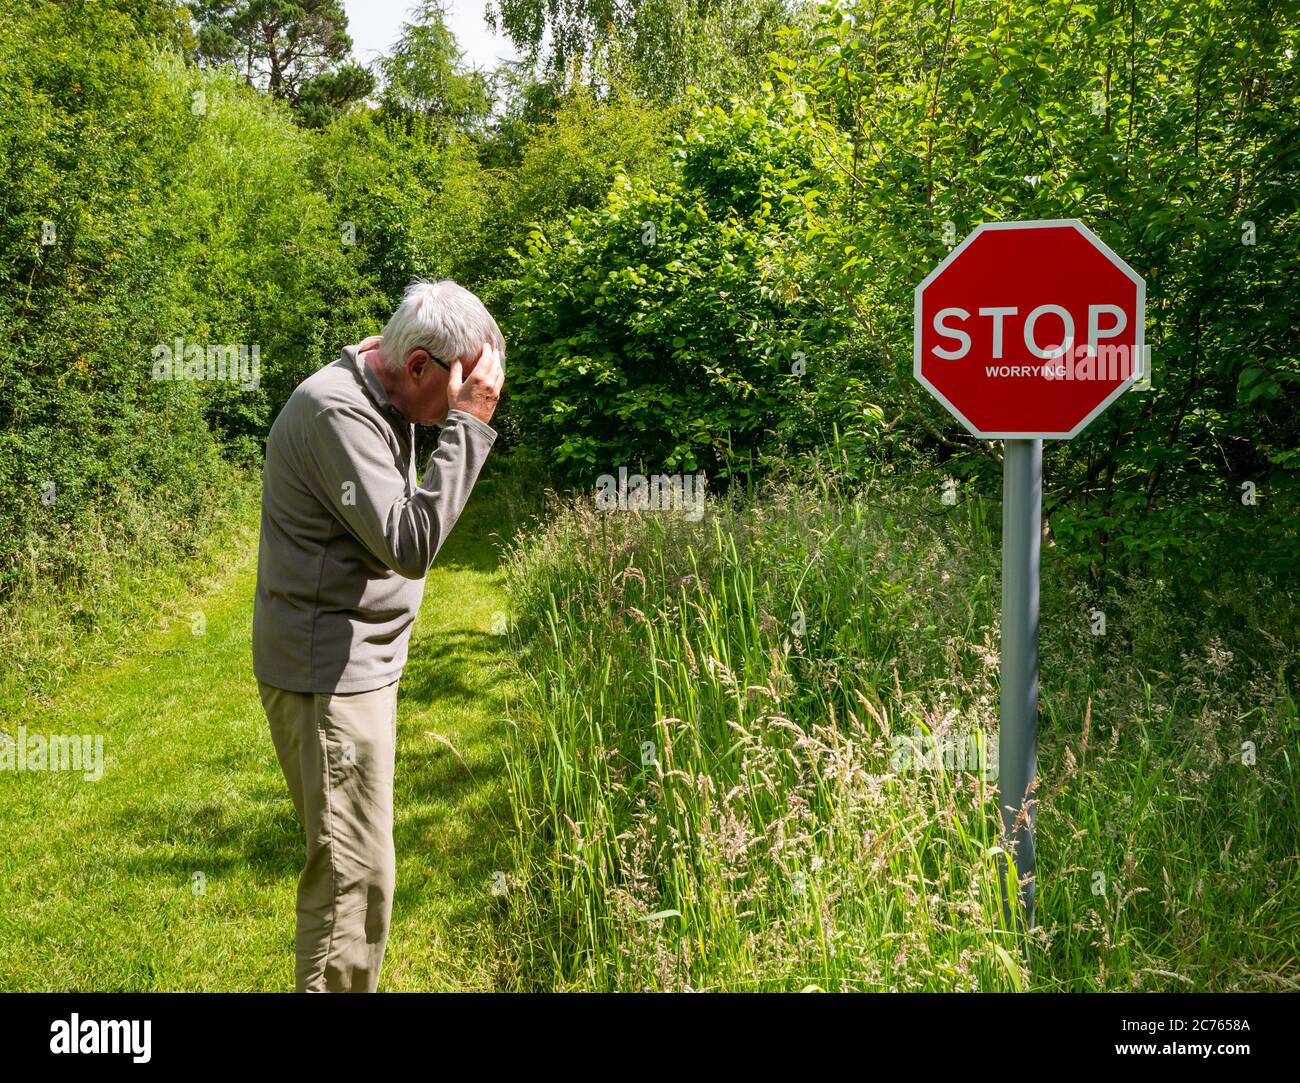 Peculiar señal de advertencia de dejar de preocuparse en el camino del país con el hombre mayor mirando preocupado, Gifford, East Lothian, Escocia, Reino Unido Foto de stock